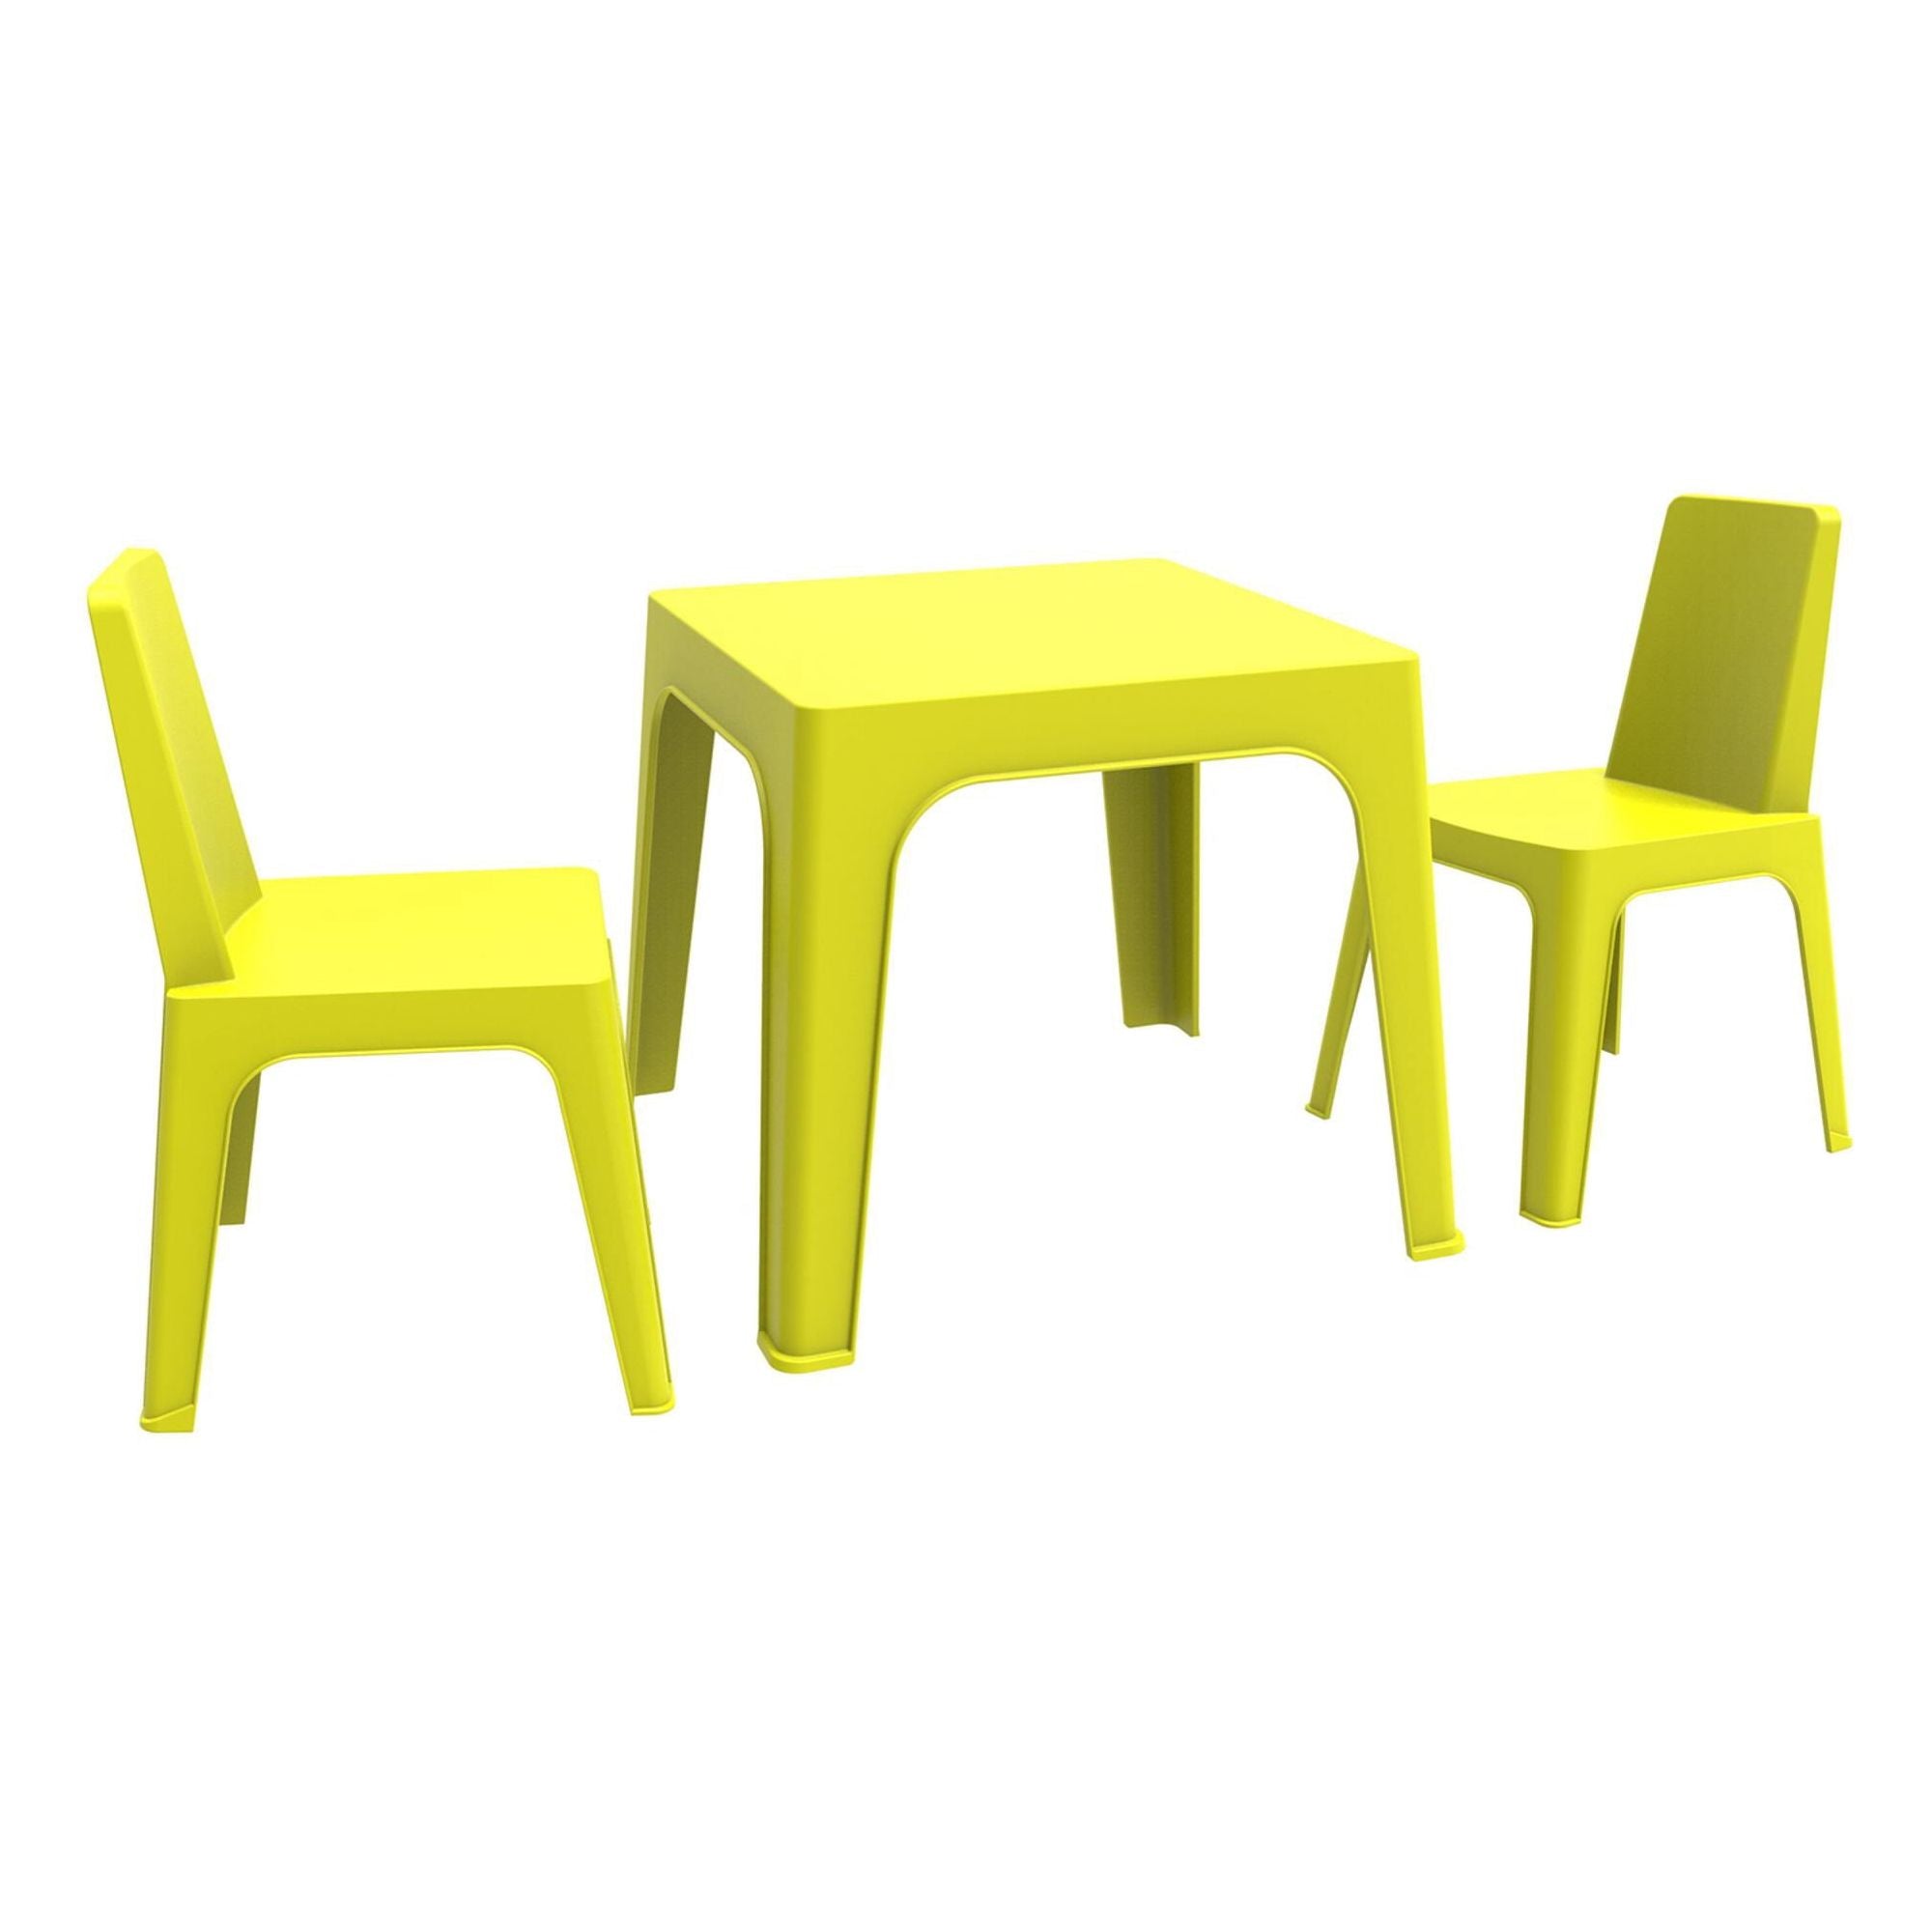 Garbar Julieta children's chair table indoors, outdoor set 2+1 green